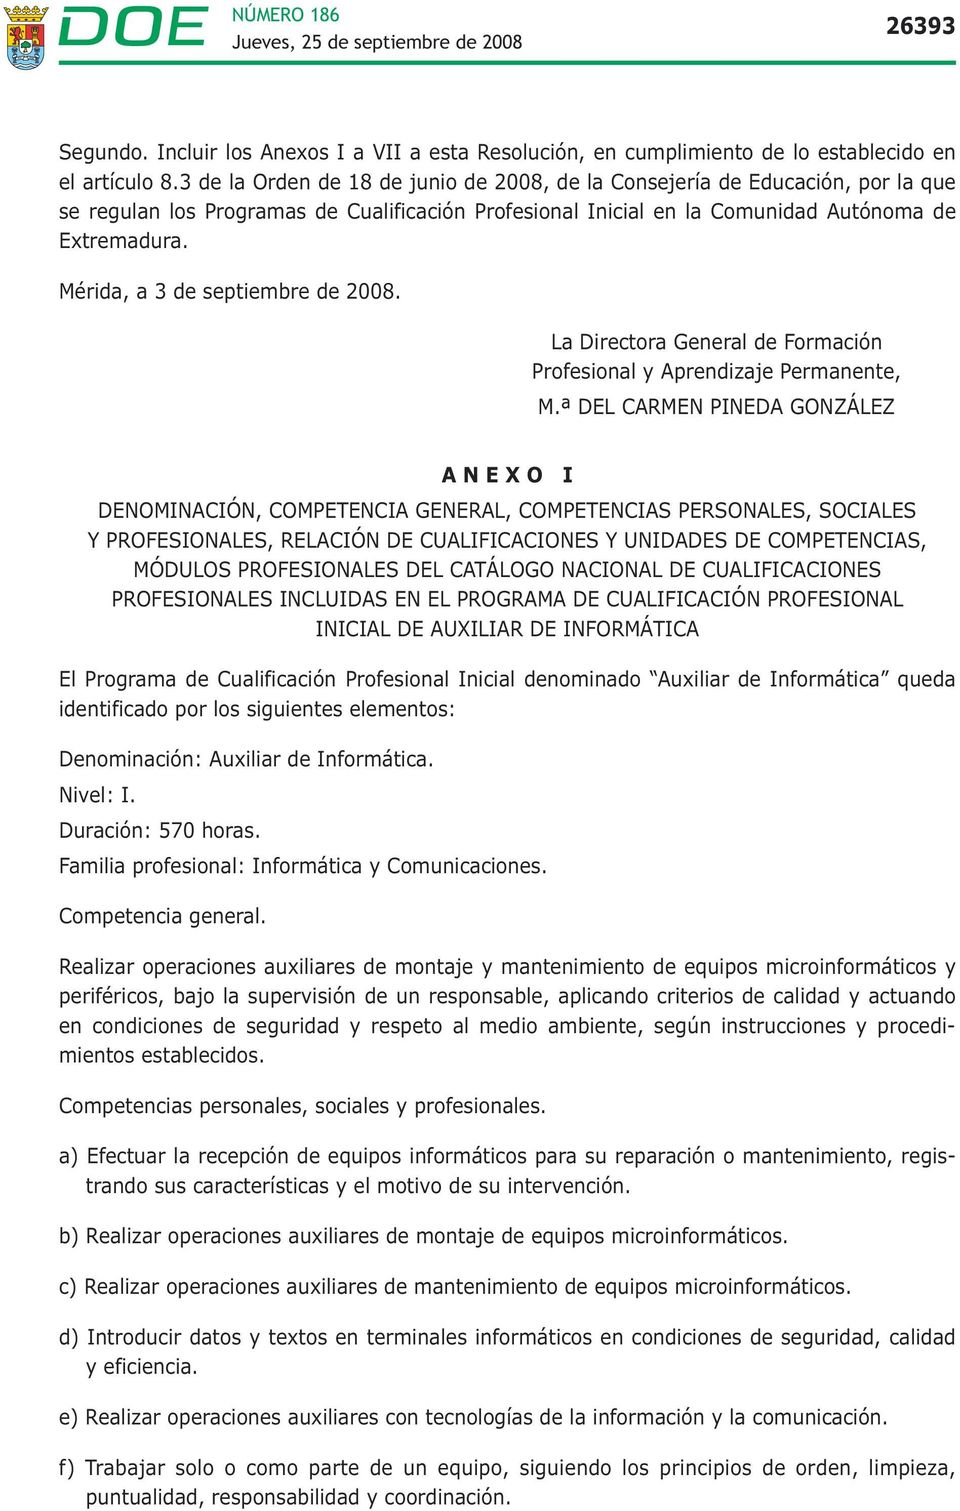 Mérida, a 3 de septiembre de 2008. La Directora General de Formación Profesional y Aprendizaje Permanente, M.